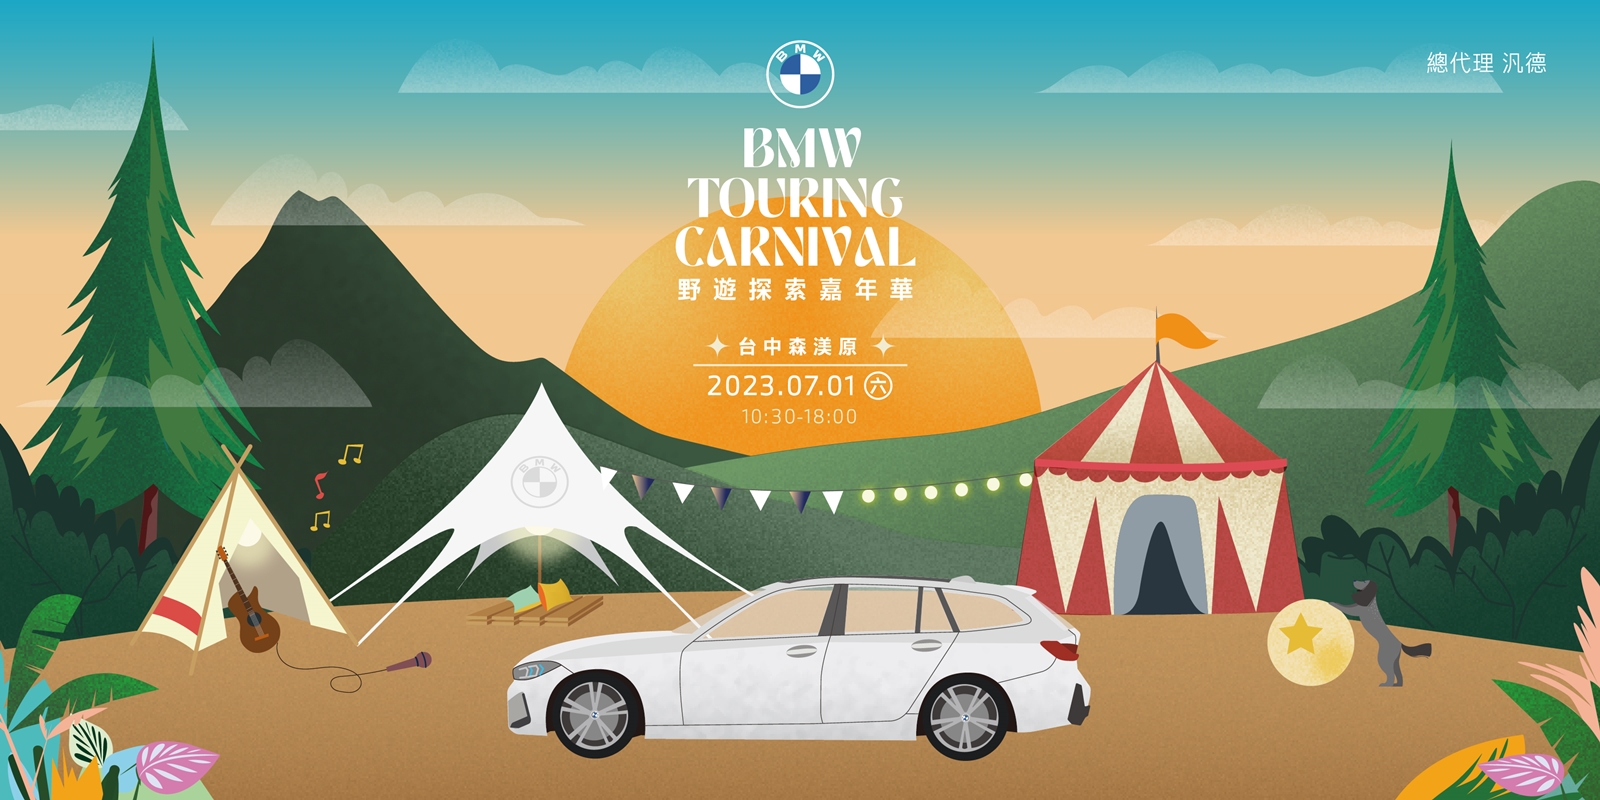 BMW Touring Carnival野遊探索嘉年華 邀請全台BMW車主一同歡享專屬夏日盛宴